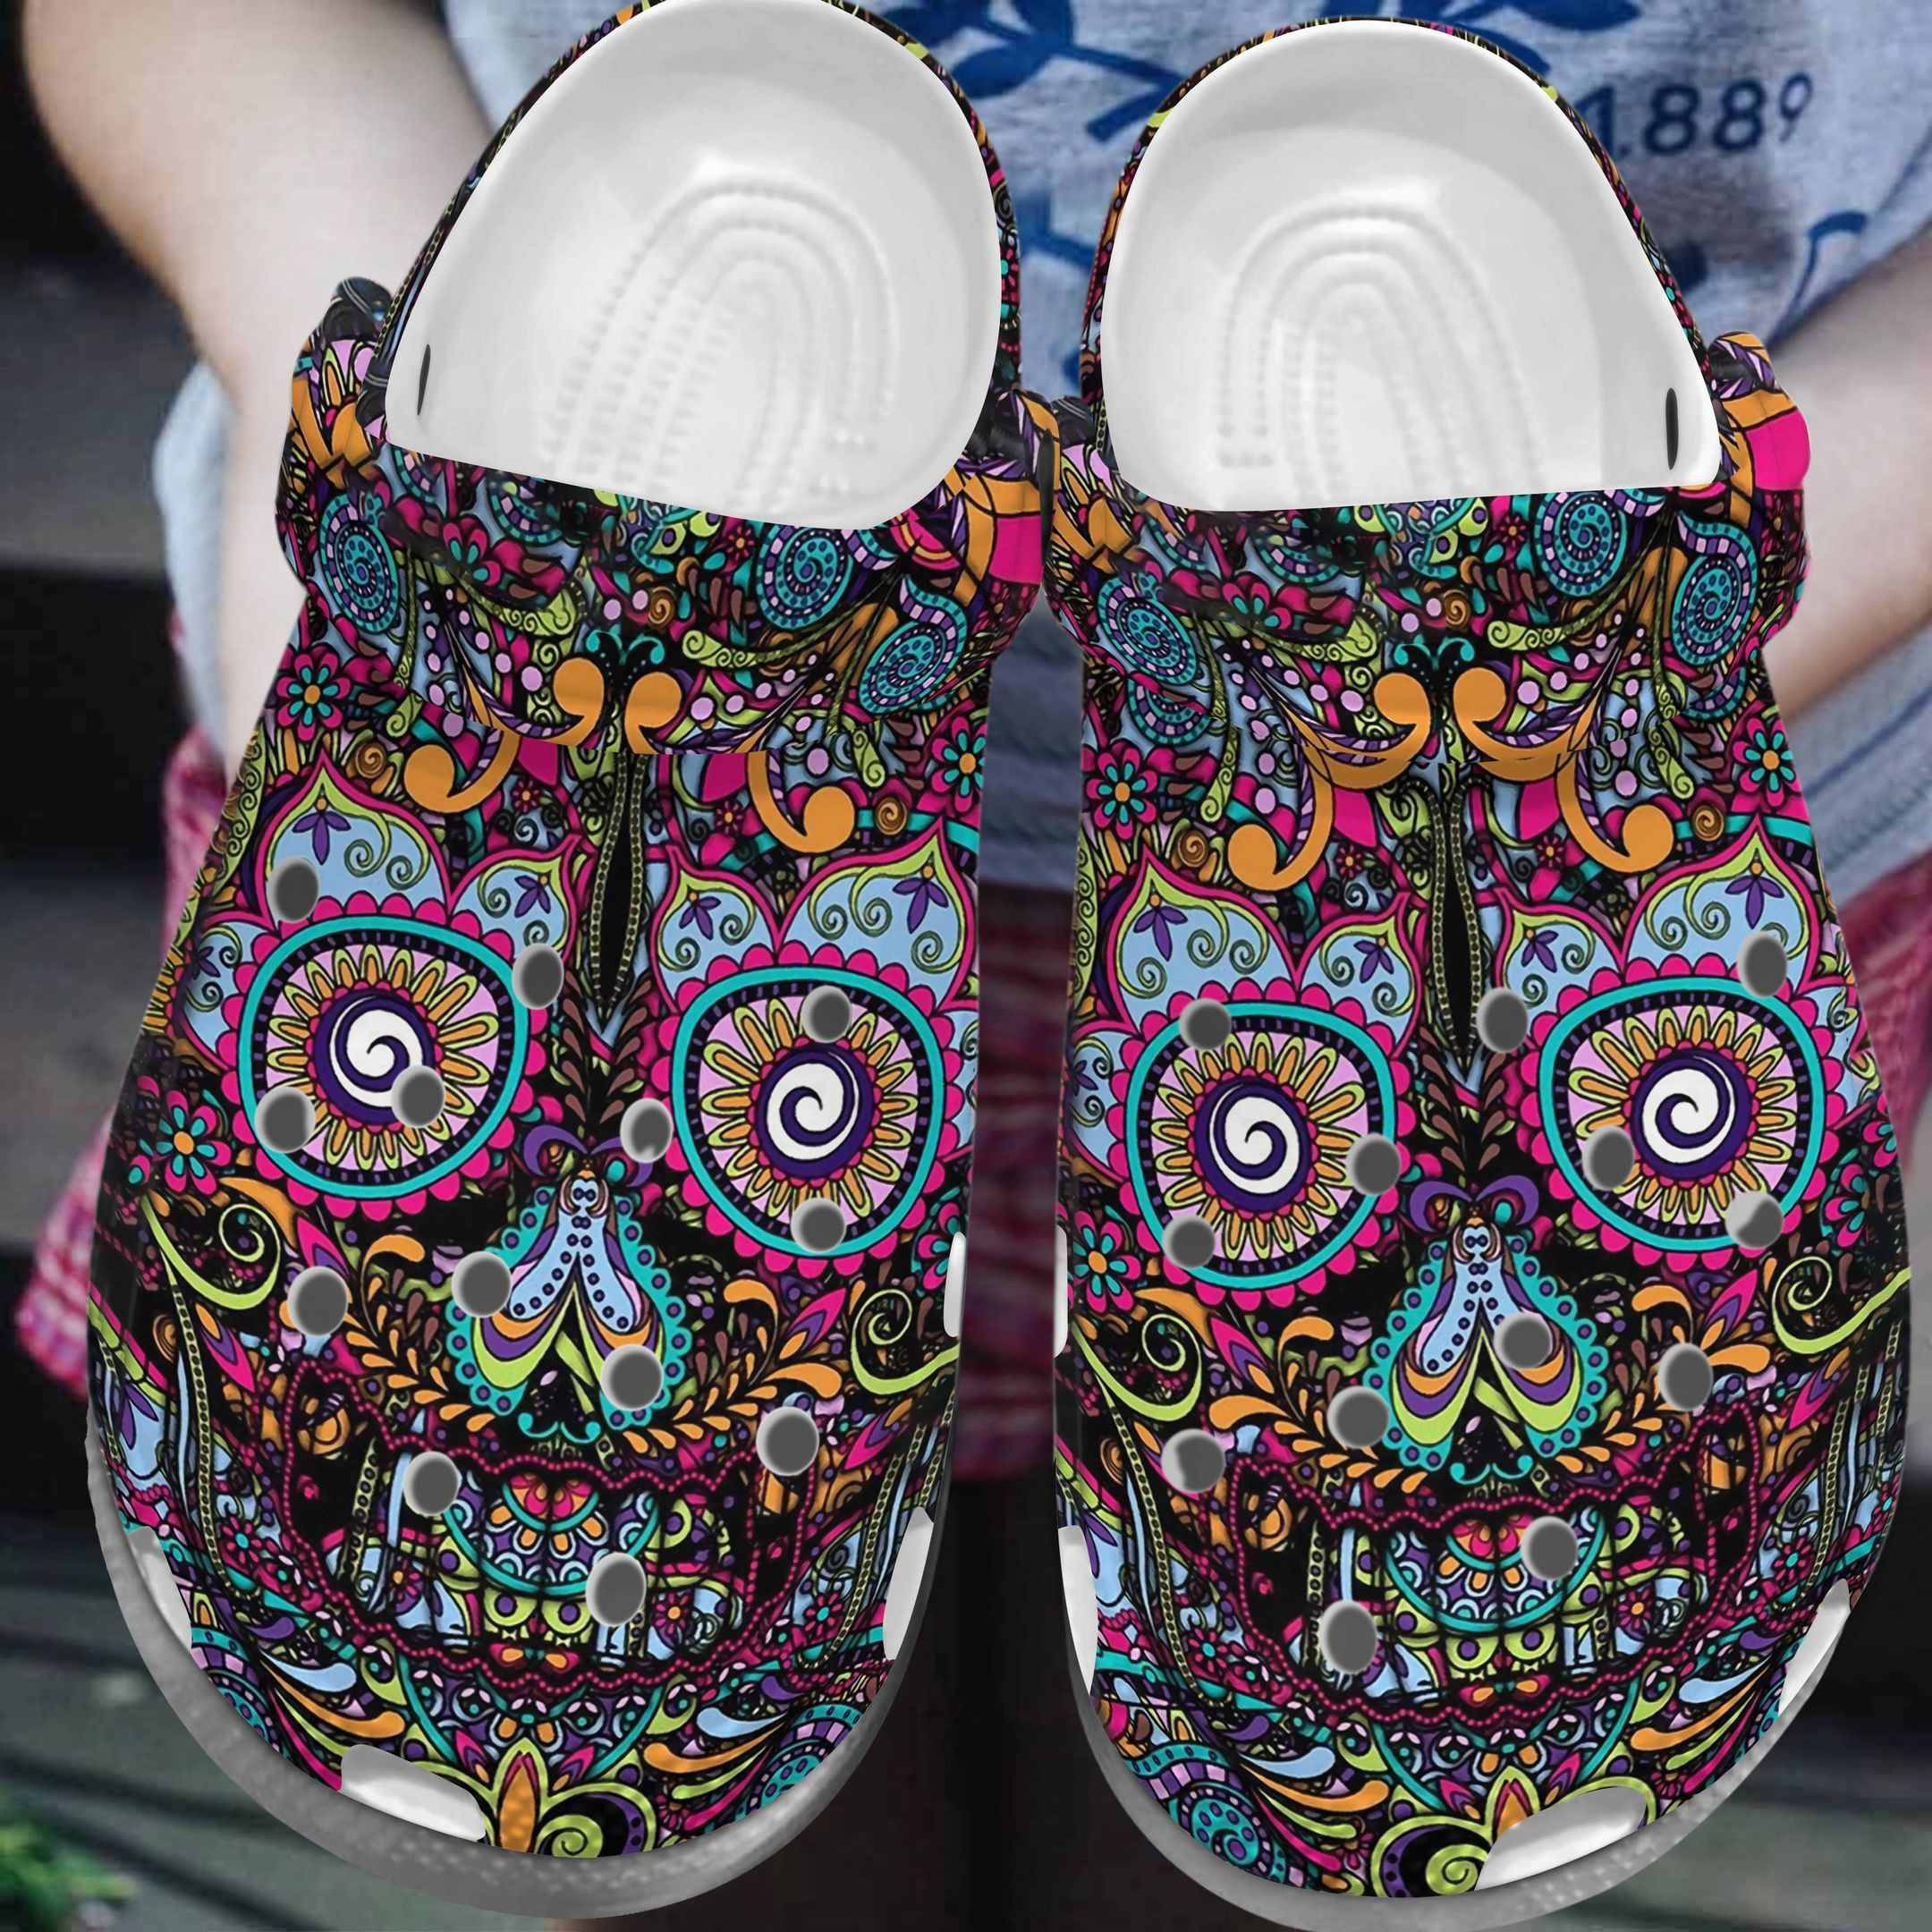 Art Flower Face Shoes - Artist Custom Birthday Gifts For Women Daughter